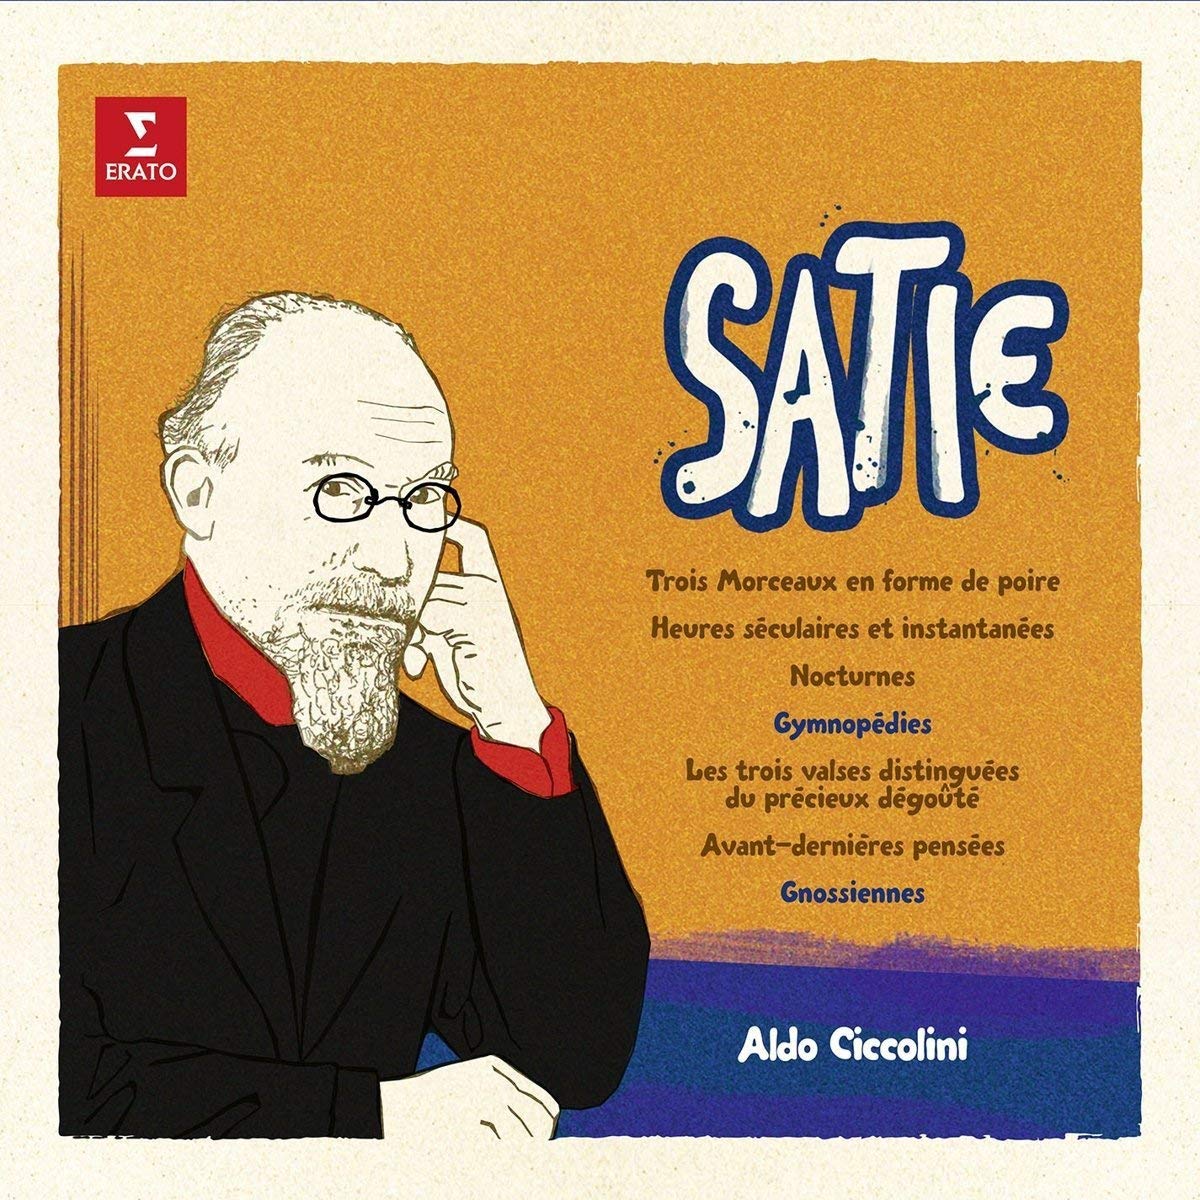 „Satie“: Die unerträgliche Leichtigkeit der Zeit